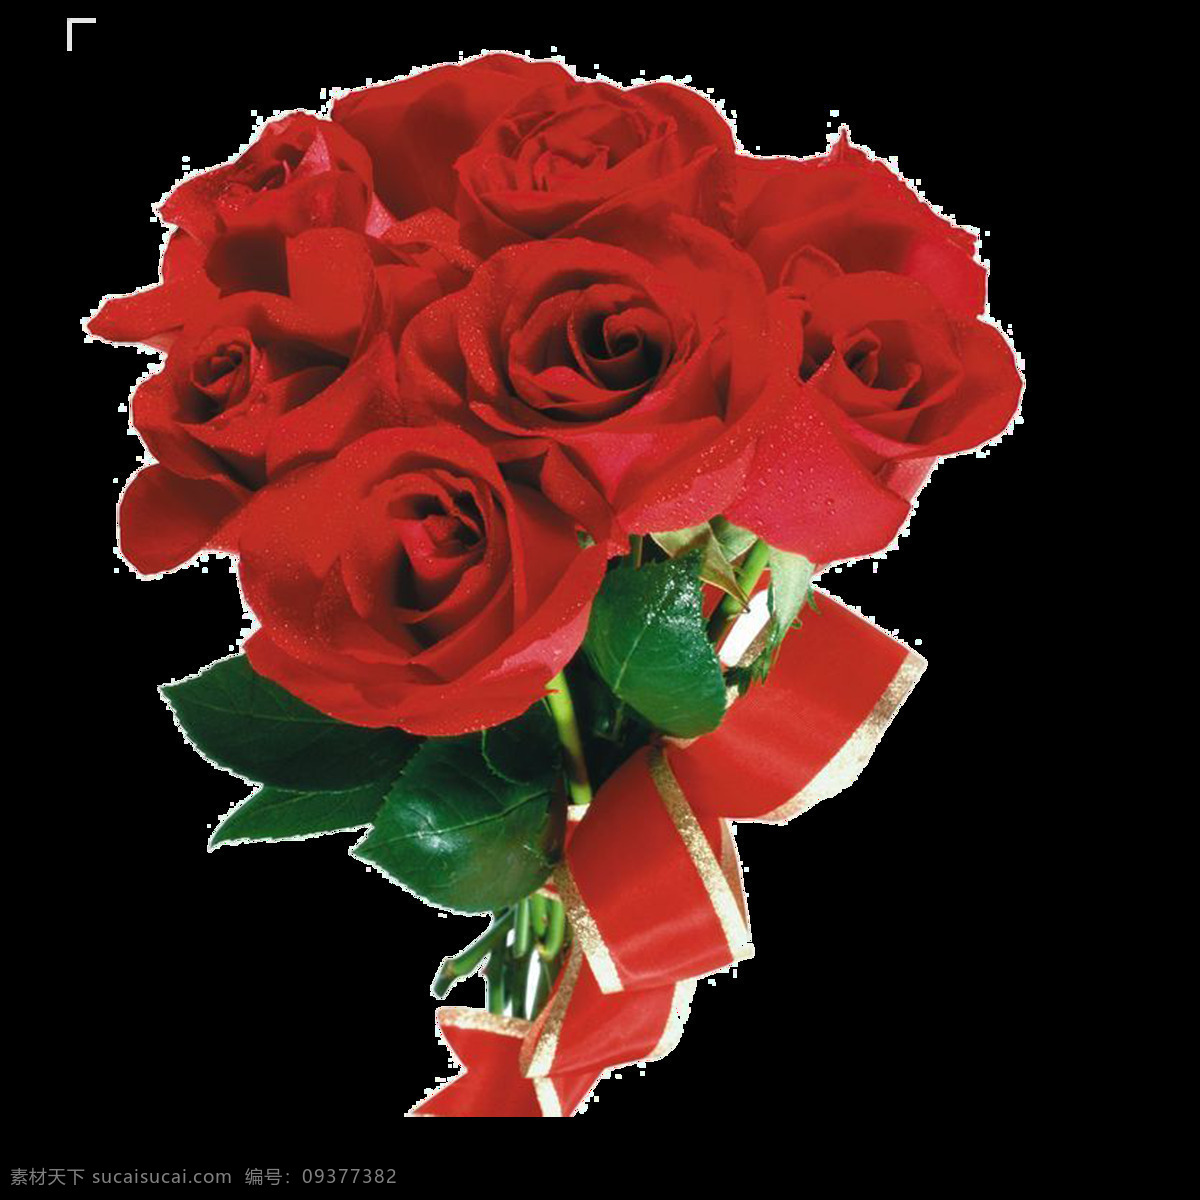 盛开 鲜艳 红色 玫瑰花 花朵 花束 实物 元素 花瓣 花瓣素材 飘落的花瓣 素材唯美 唯美素材